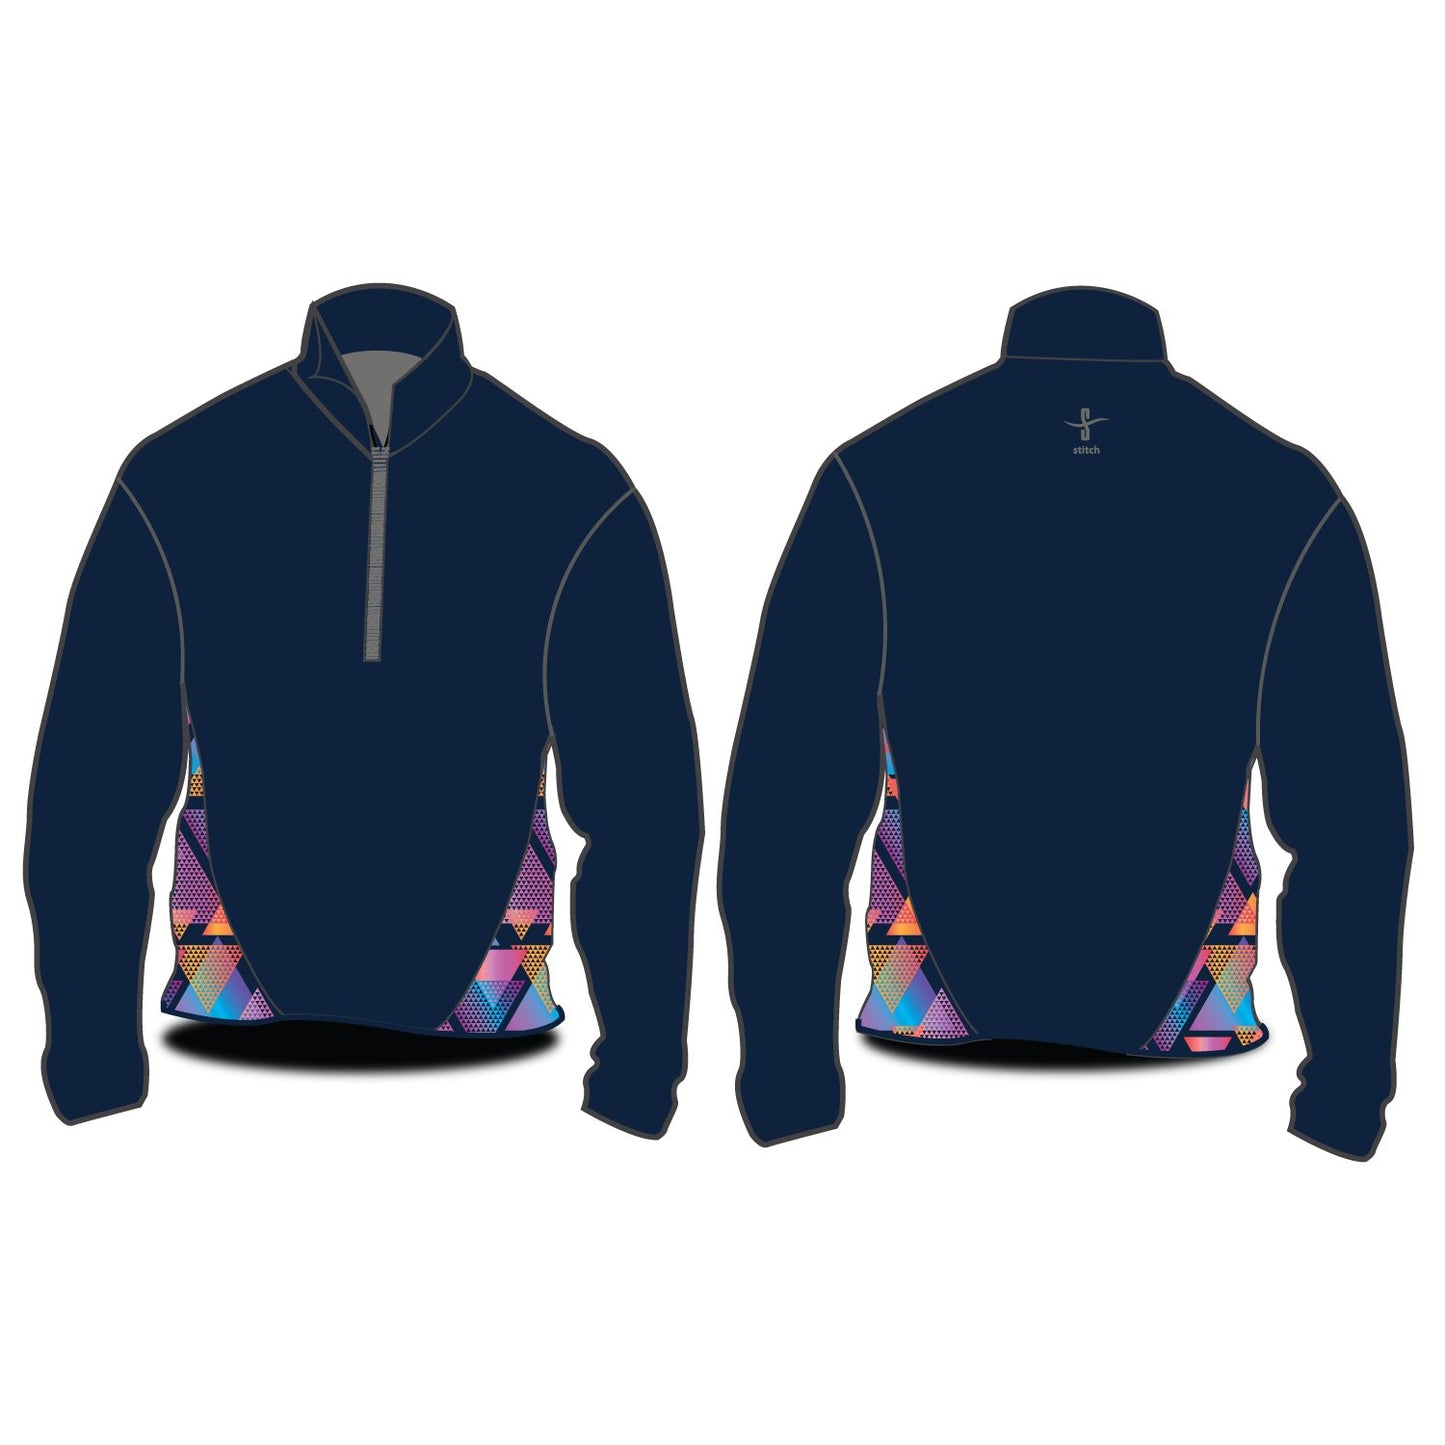 Stitch Rowing 24-7 Softshell Jacket Illuminati Side Panels